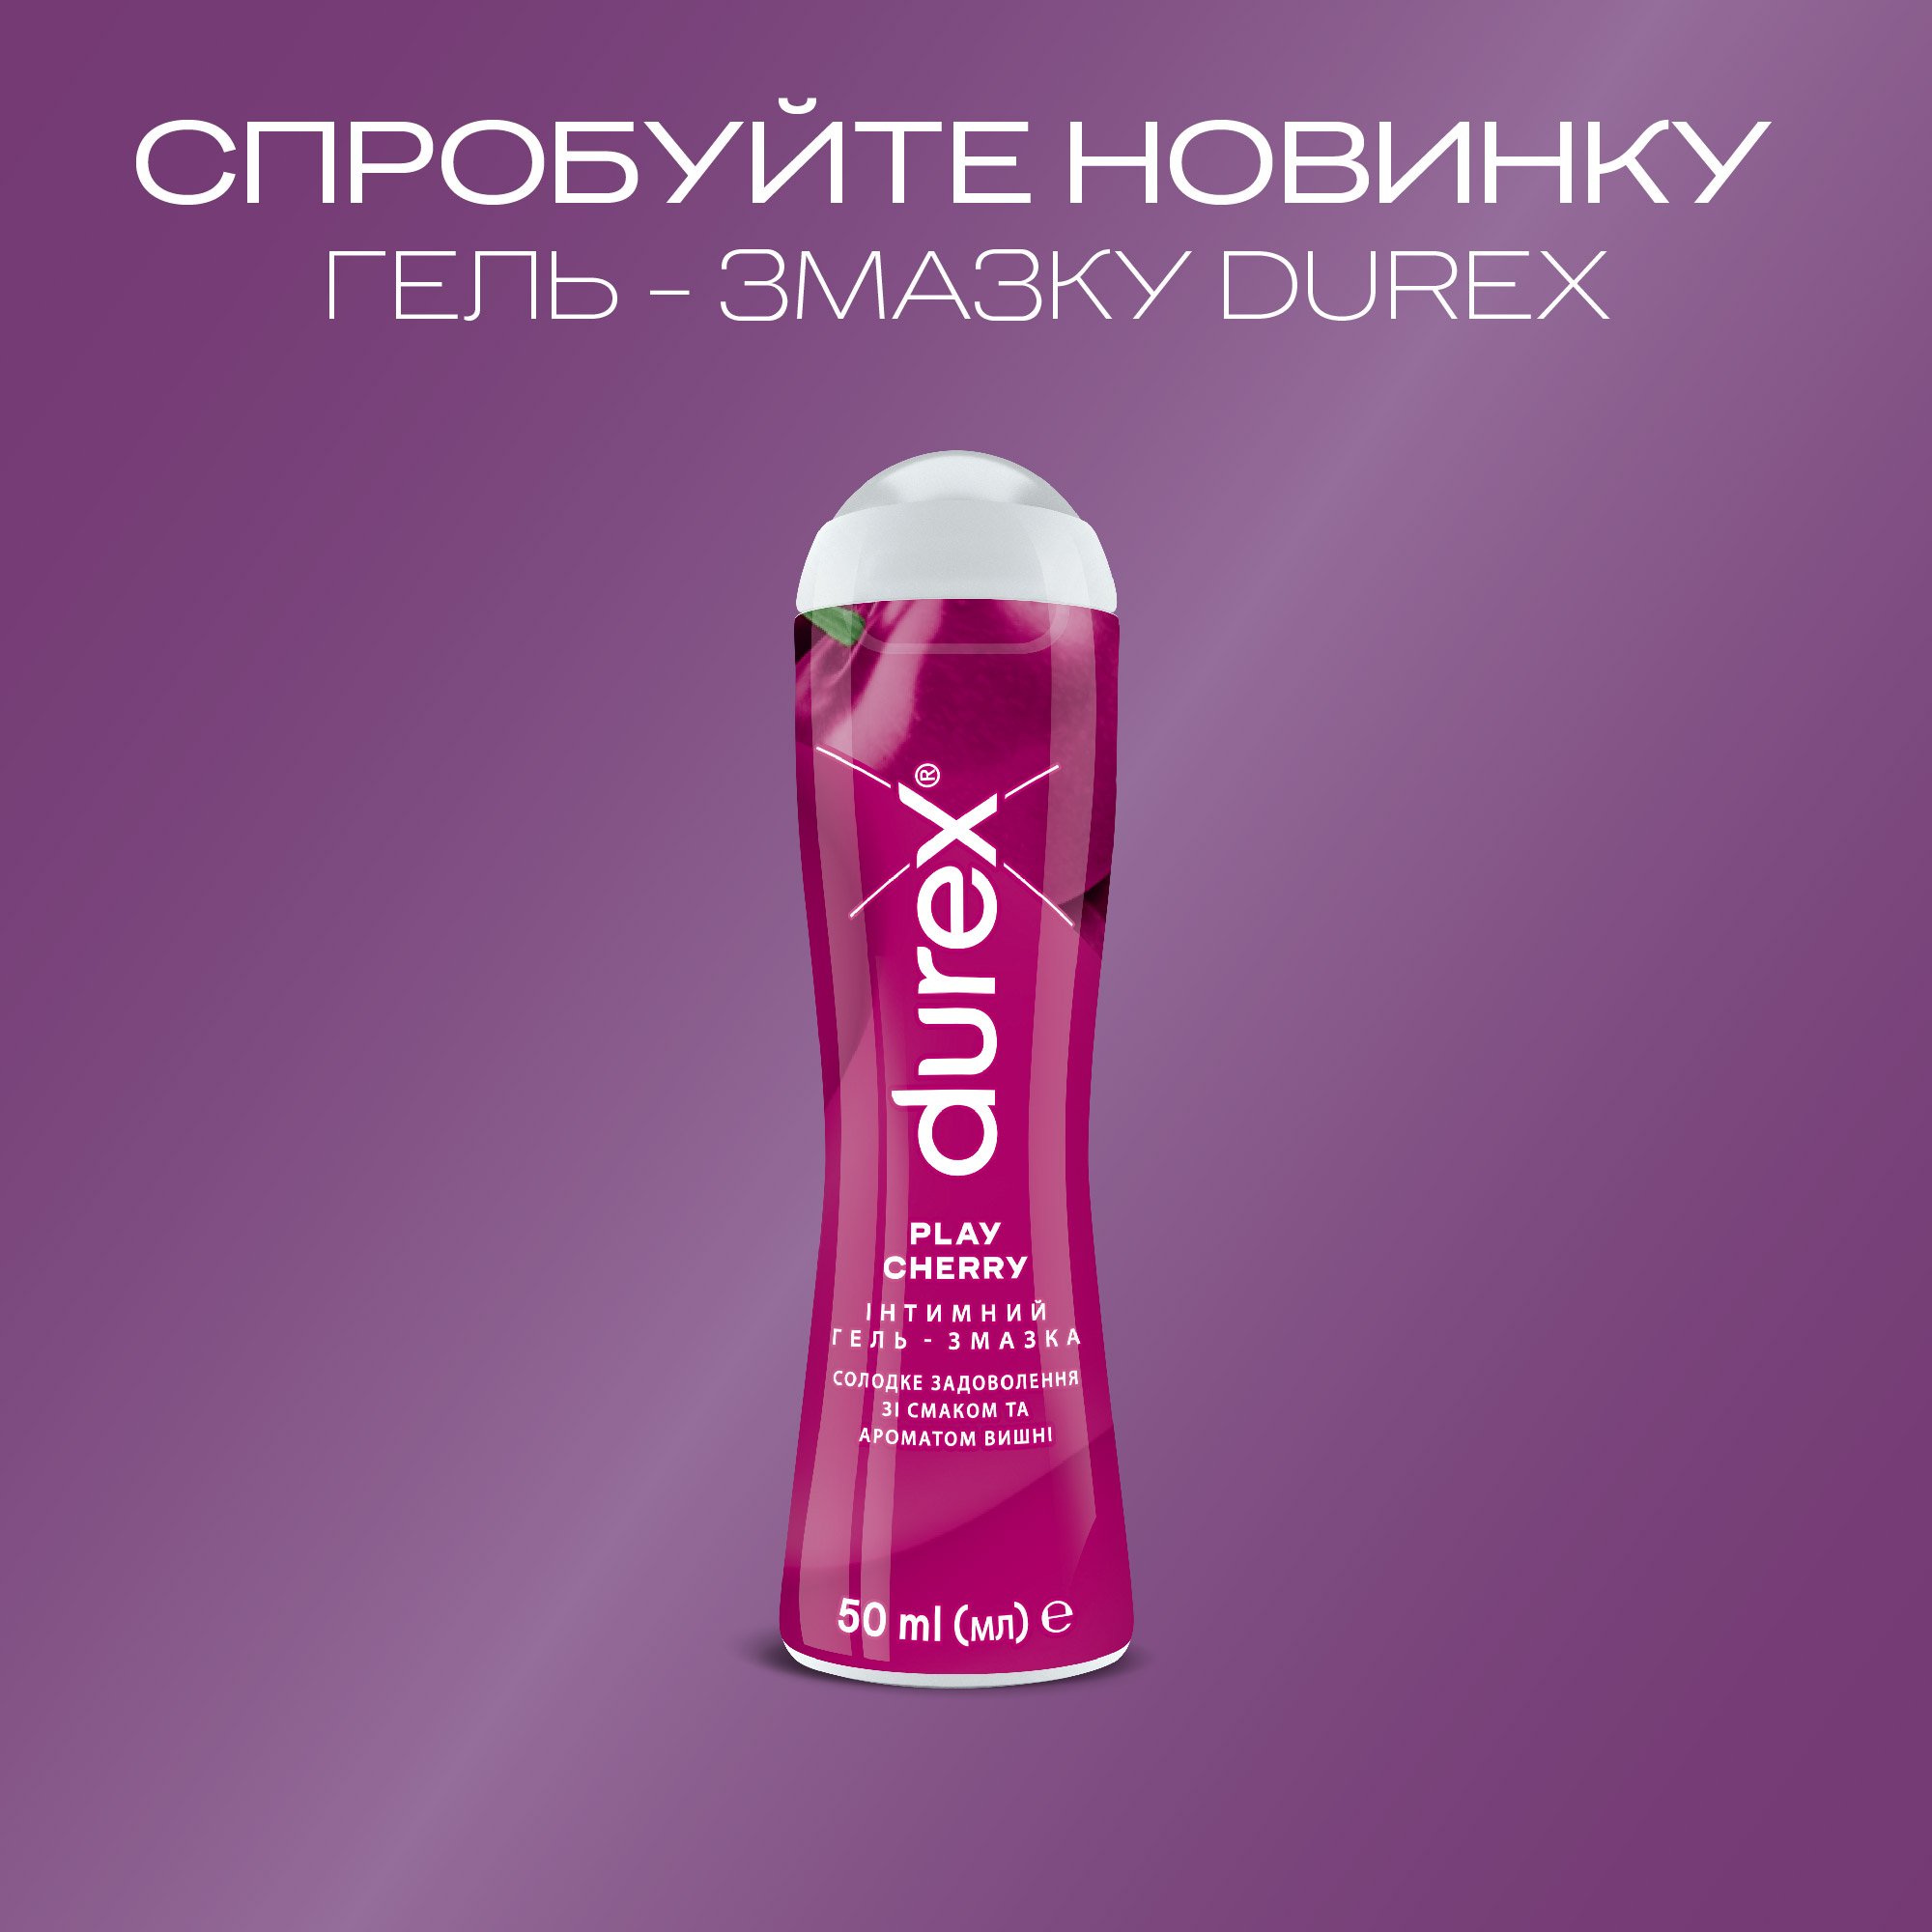 Інтимна гель-змазка Durex Play Cherry, зі смаком та ароматом вишні (лубрикант), 50 мл (3231112) - фото 3